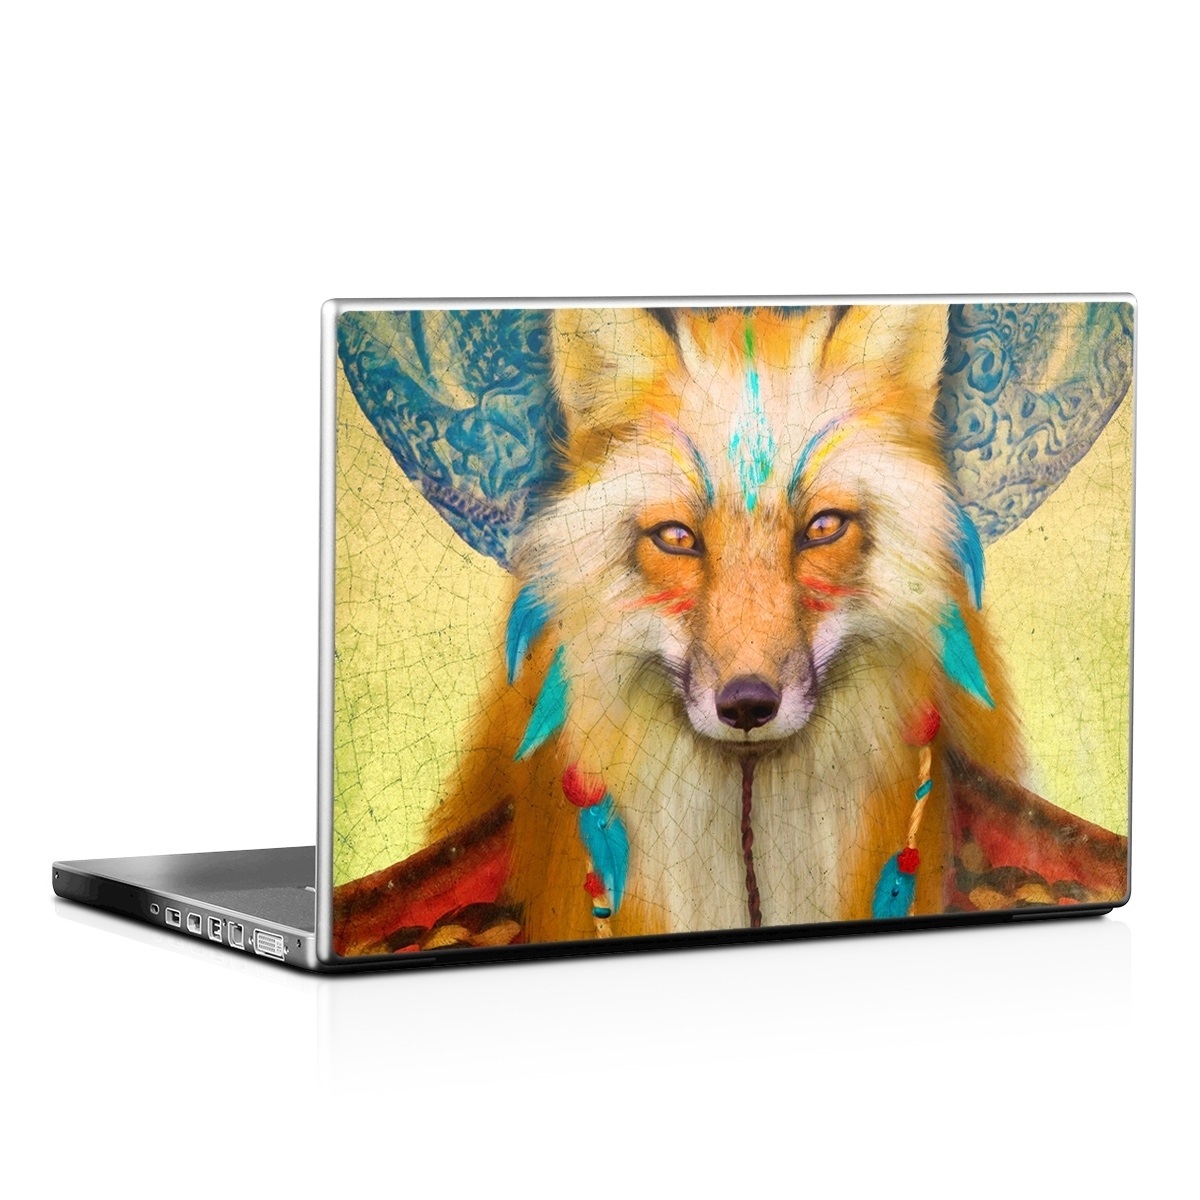 Laptop Skin - Wise Fox (Image 1)